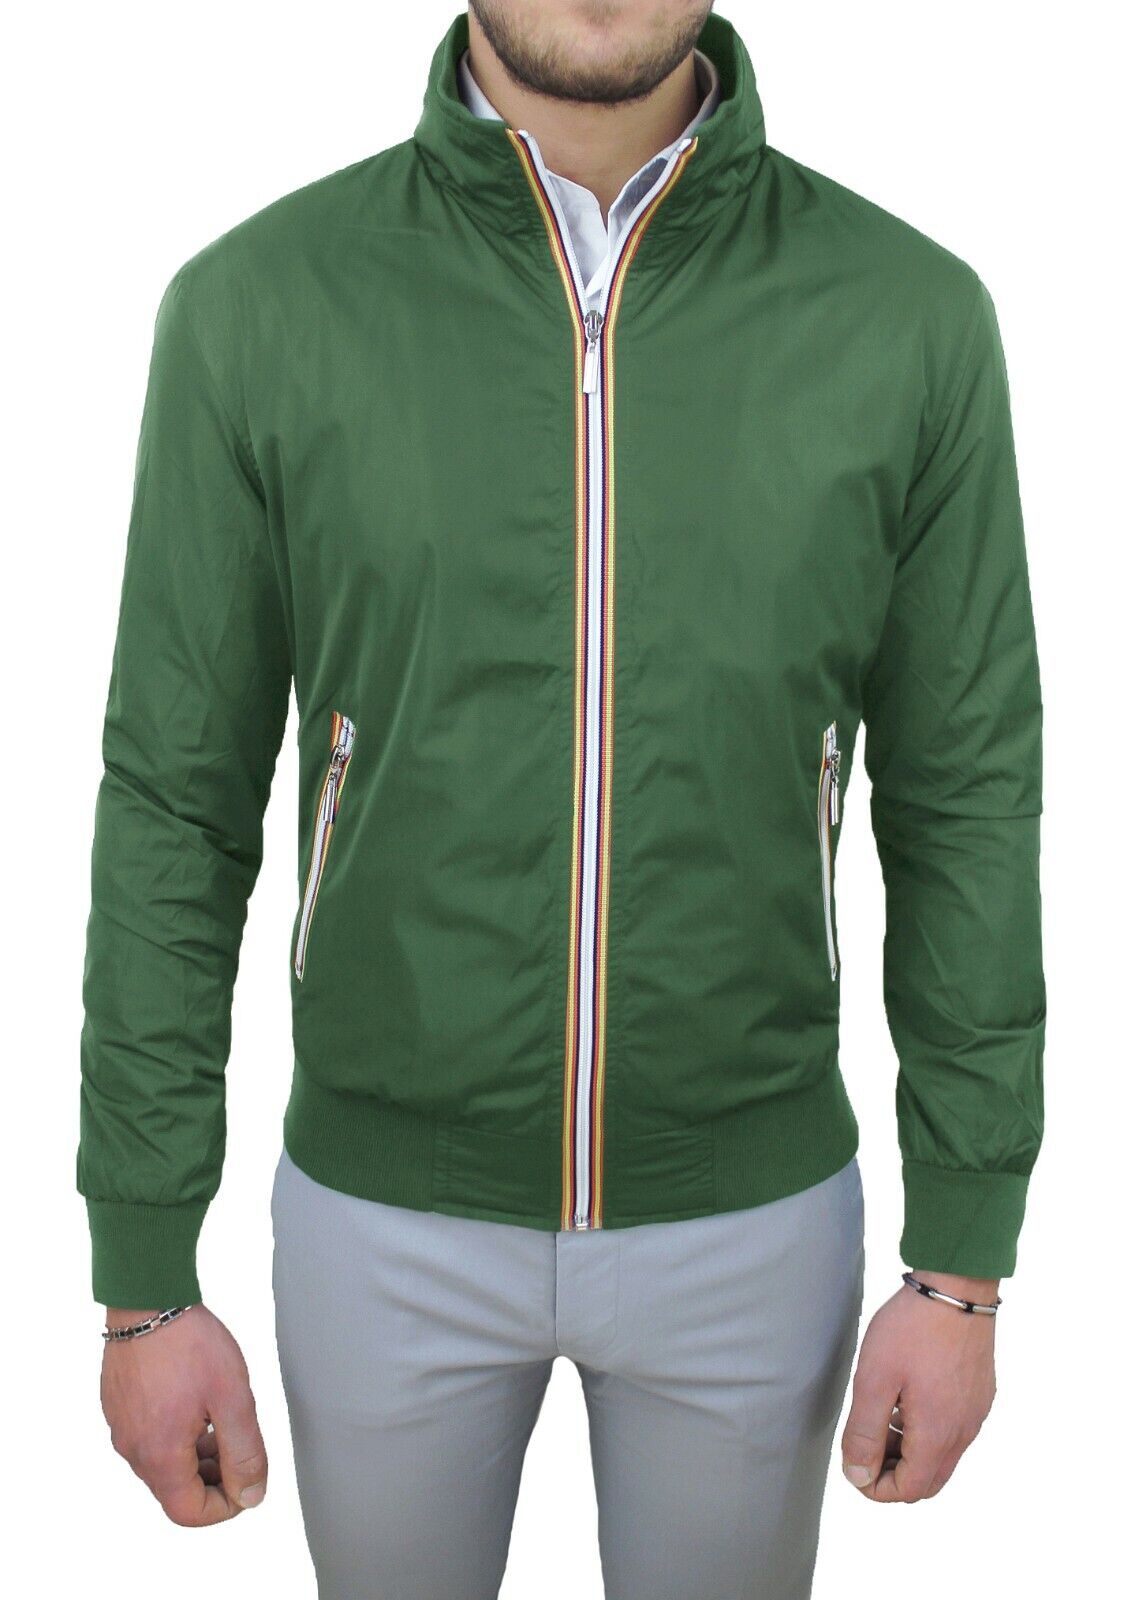 Giubbotto giacca uomo verde casual slim fit giubbino trench primavera estate